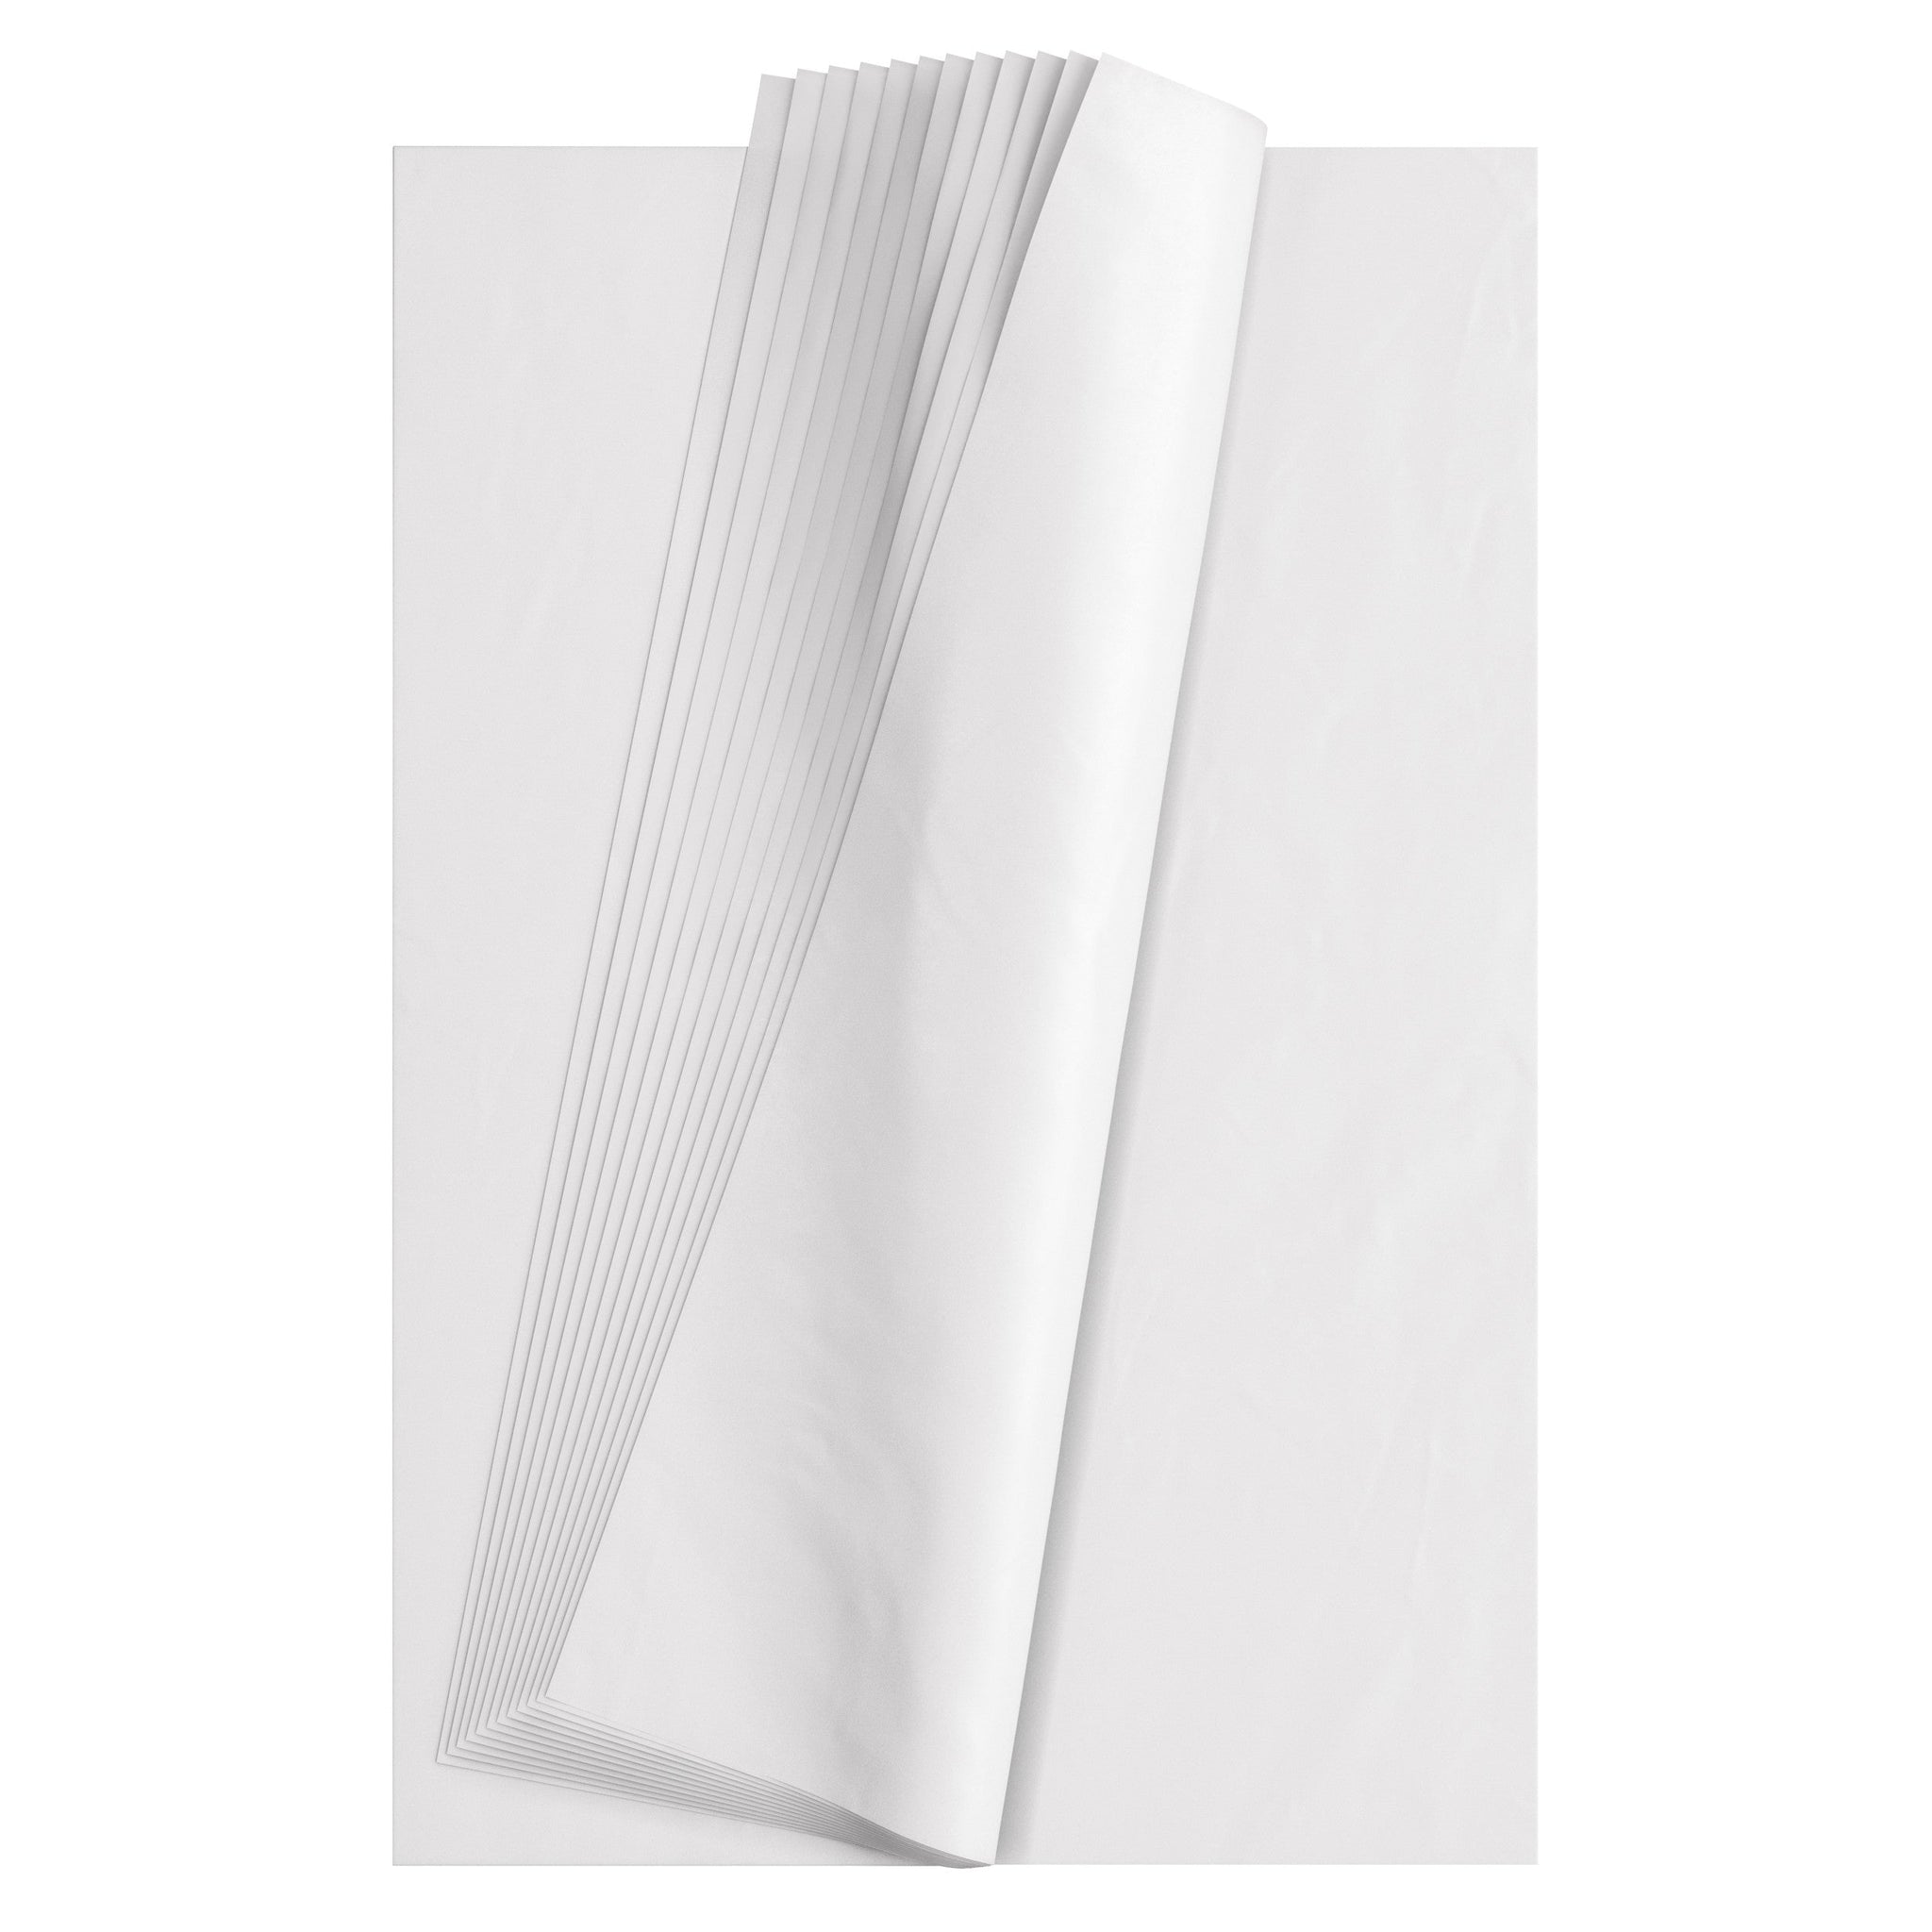 Tissue Paper Sheets Bulk Pack - 20 x 30, White S-2227 - Uline